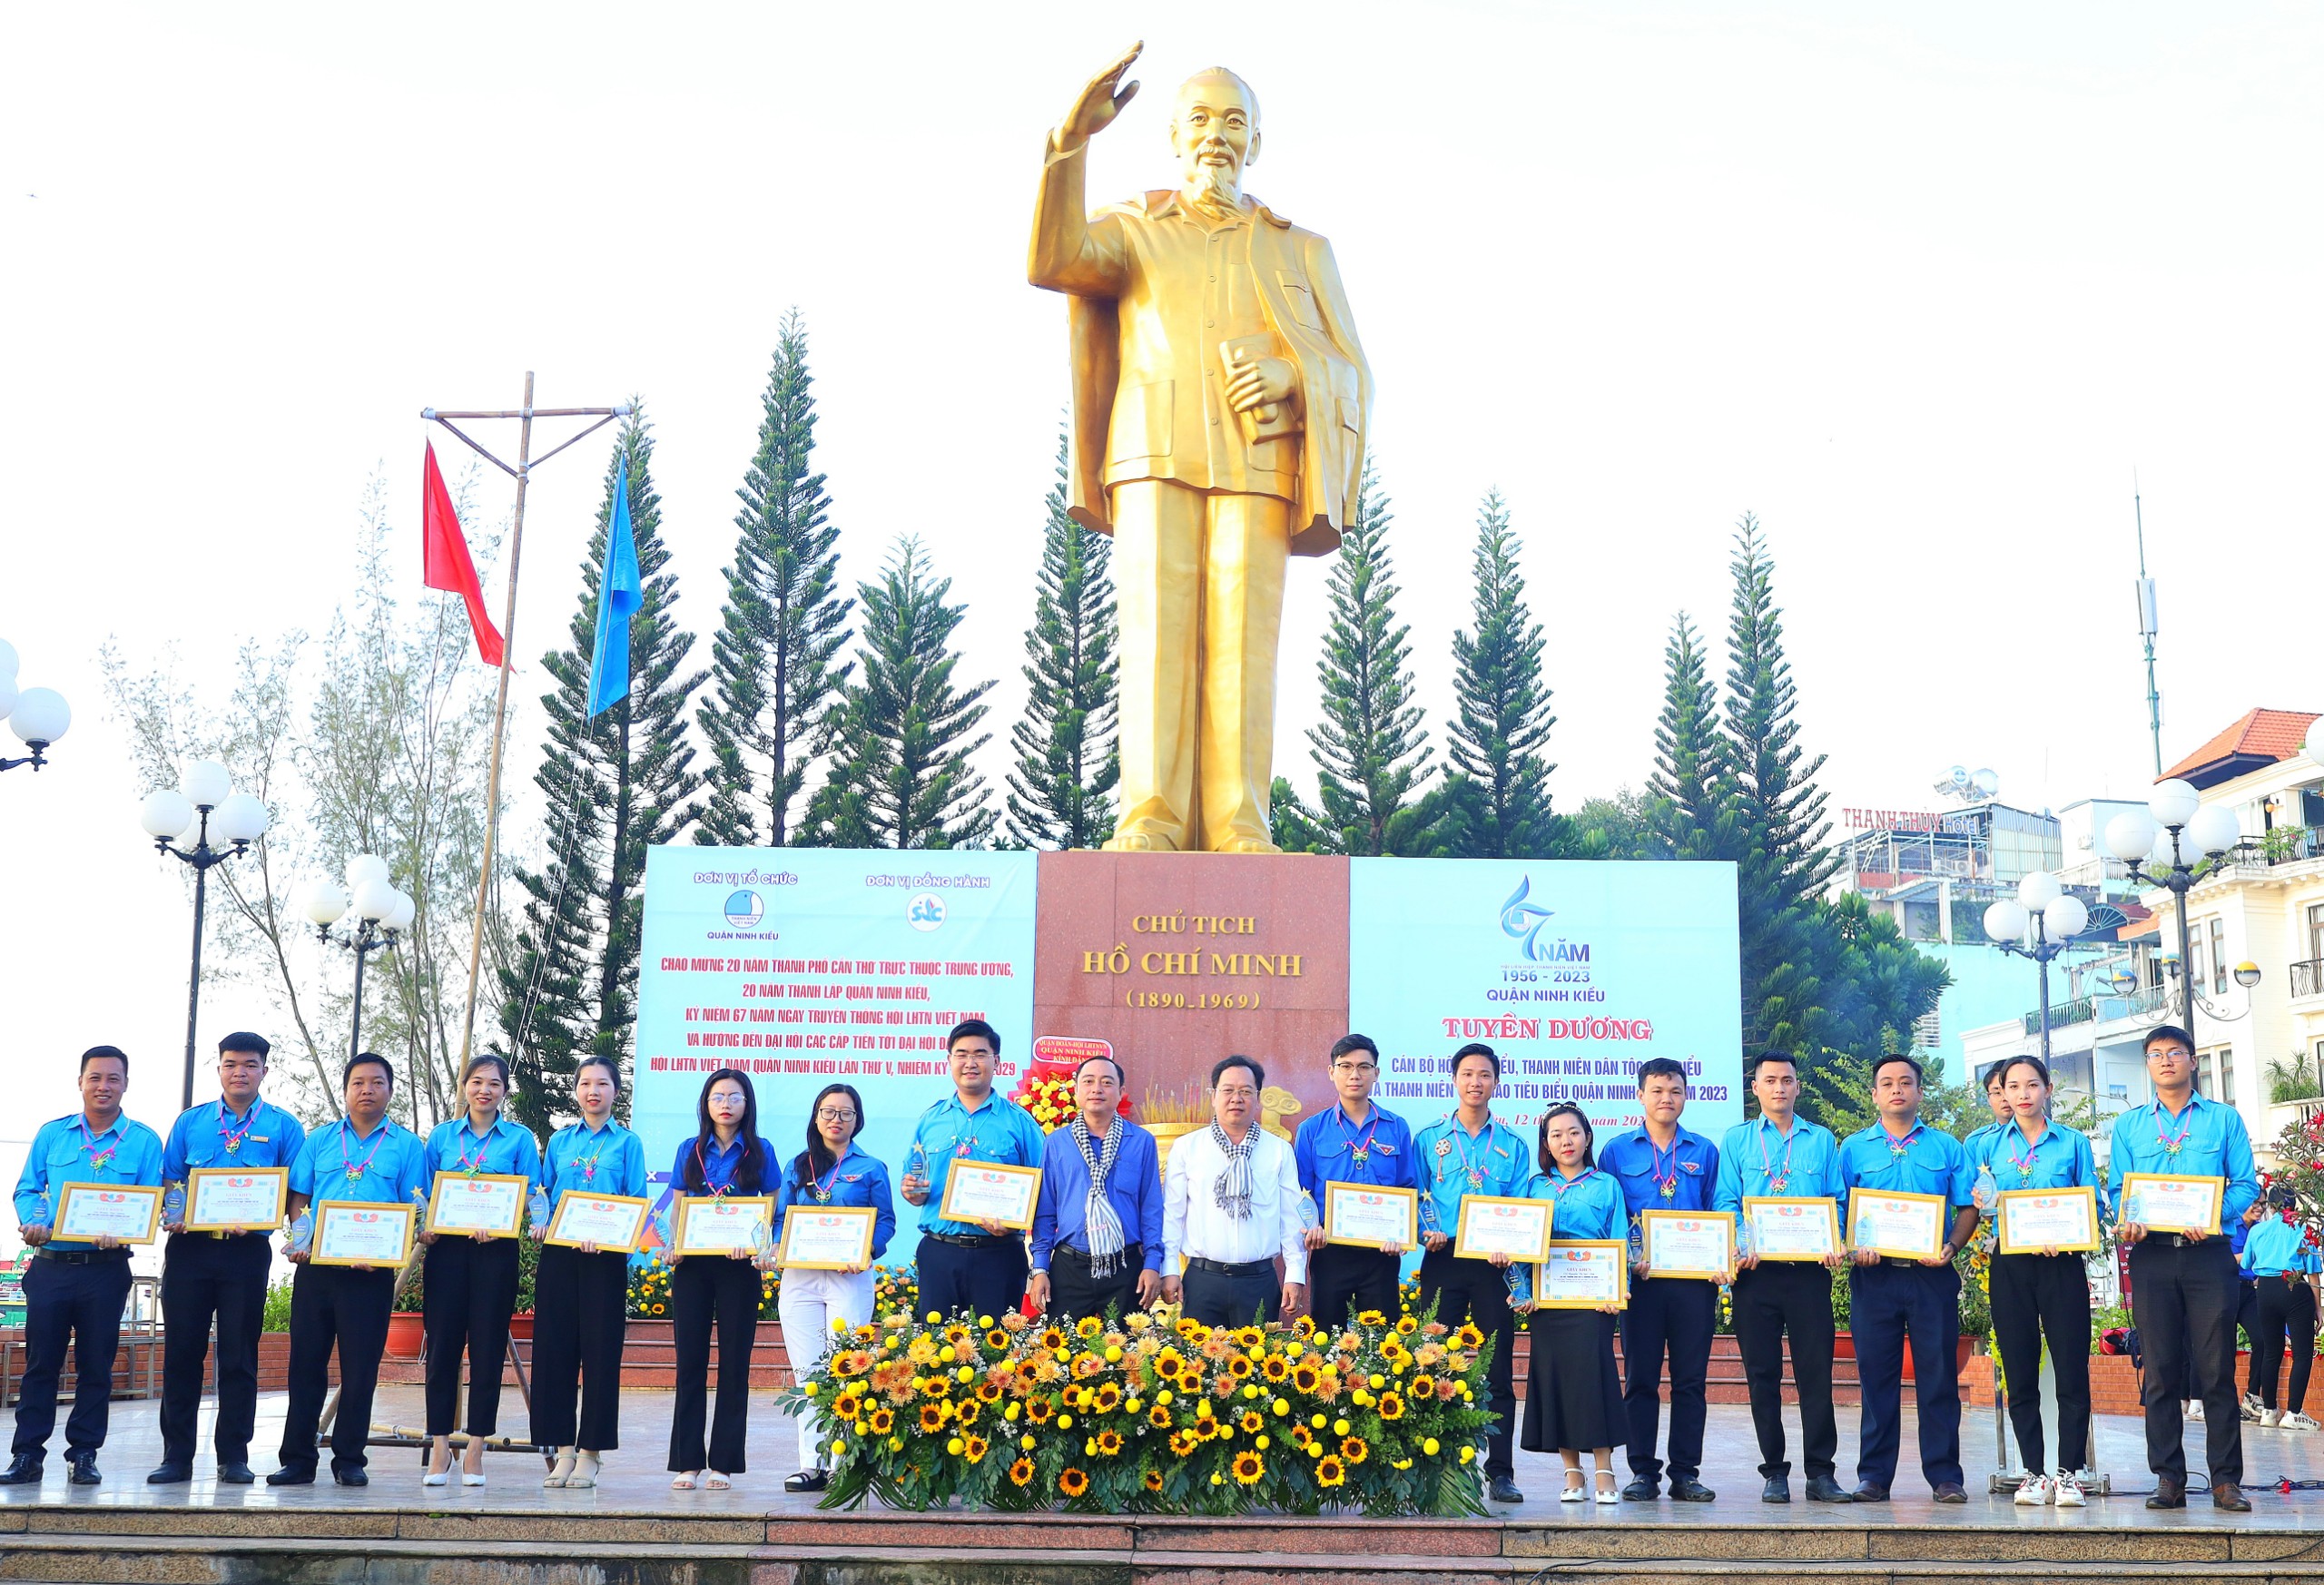 Ông Nguyễn Ngọc Ánh - Phó Chủ tịch thường trực UBND quận Ninh Kiều và ông Mai Xuân Bình - Phó Chủ tịch HĐND quận Ninh Kiều tuyên dương các cá nhân đạt danh hiệu “Gương cán bộ Hội tiêu biểu” trong công tác Hội và phong trào thanh niên.